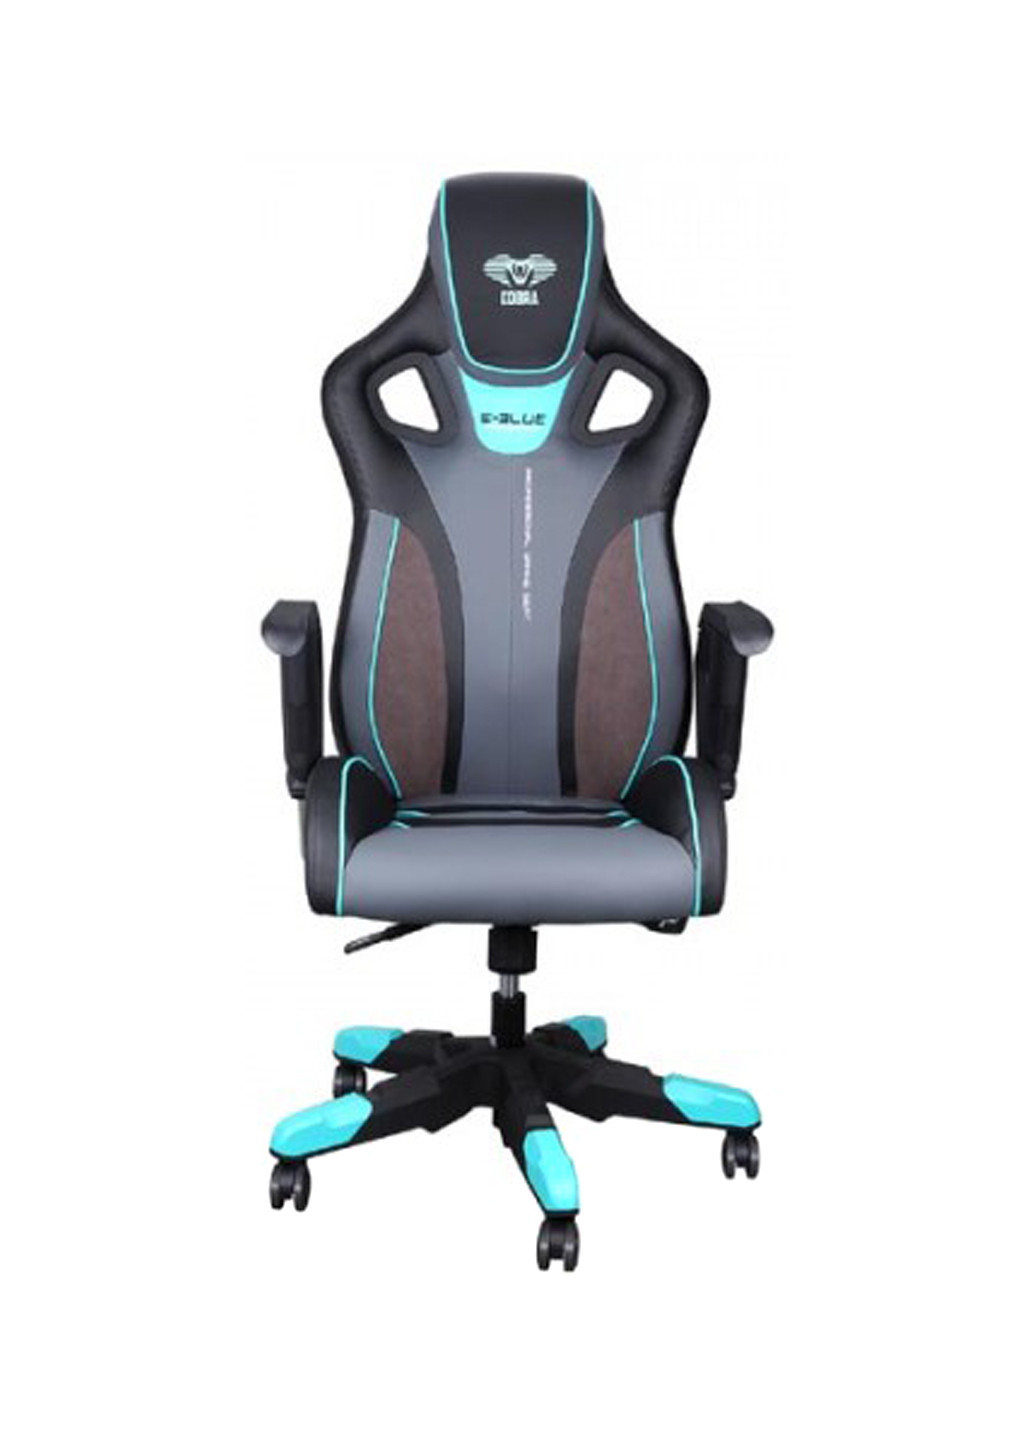 Кресло игровое COBRA, синее (EEC313BLAA-IA) E-Blue кресло игровое e-blue cobra, синее (eec313blaa-ia) (135316988)